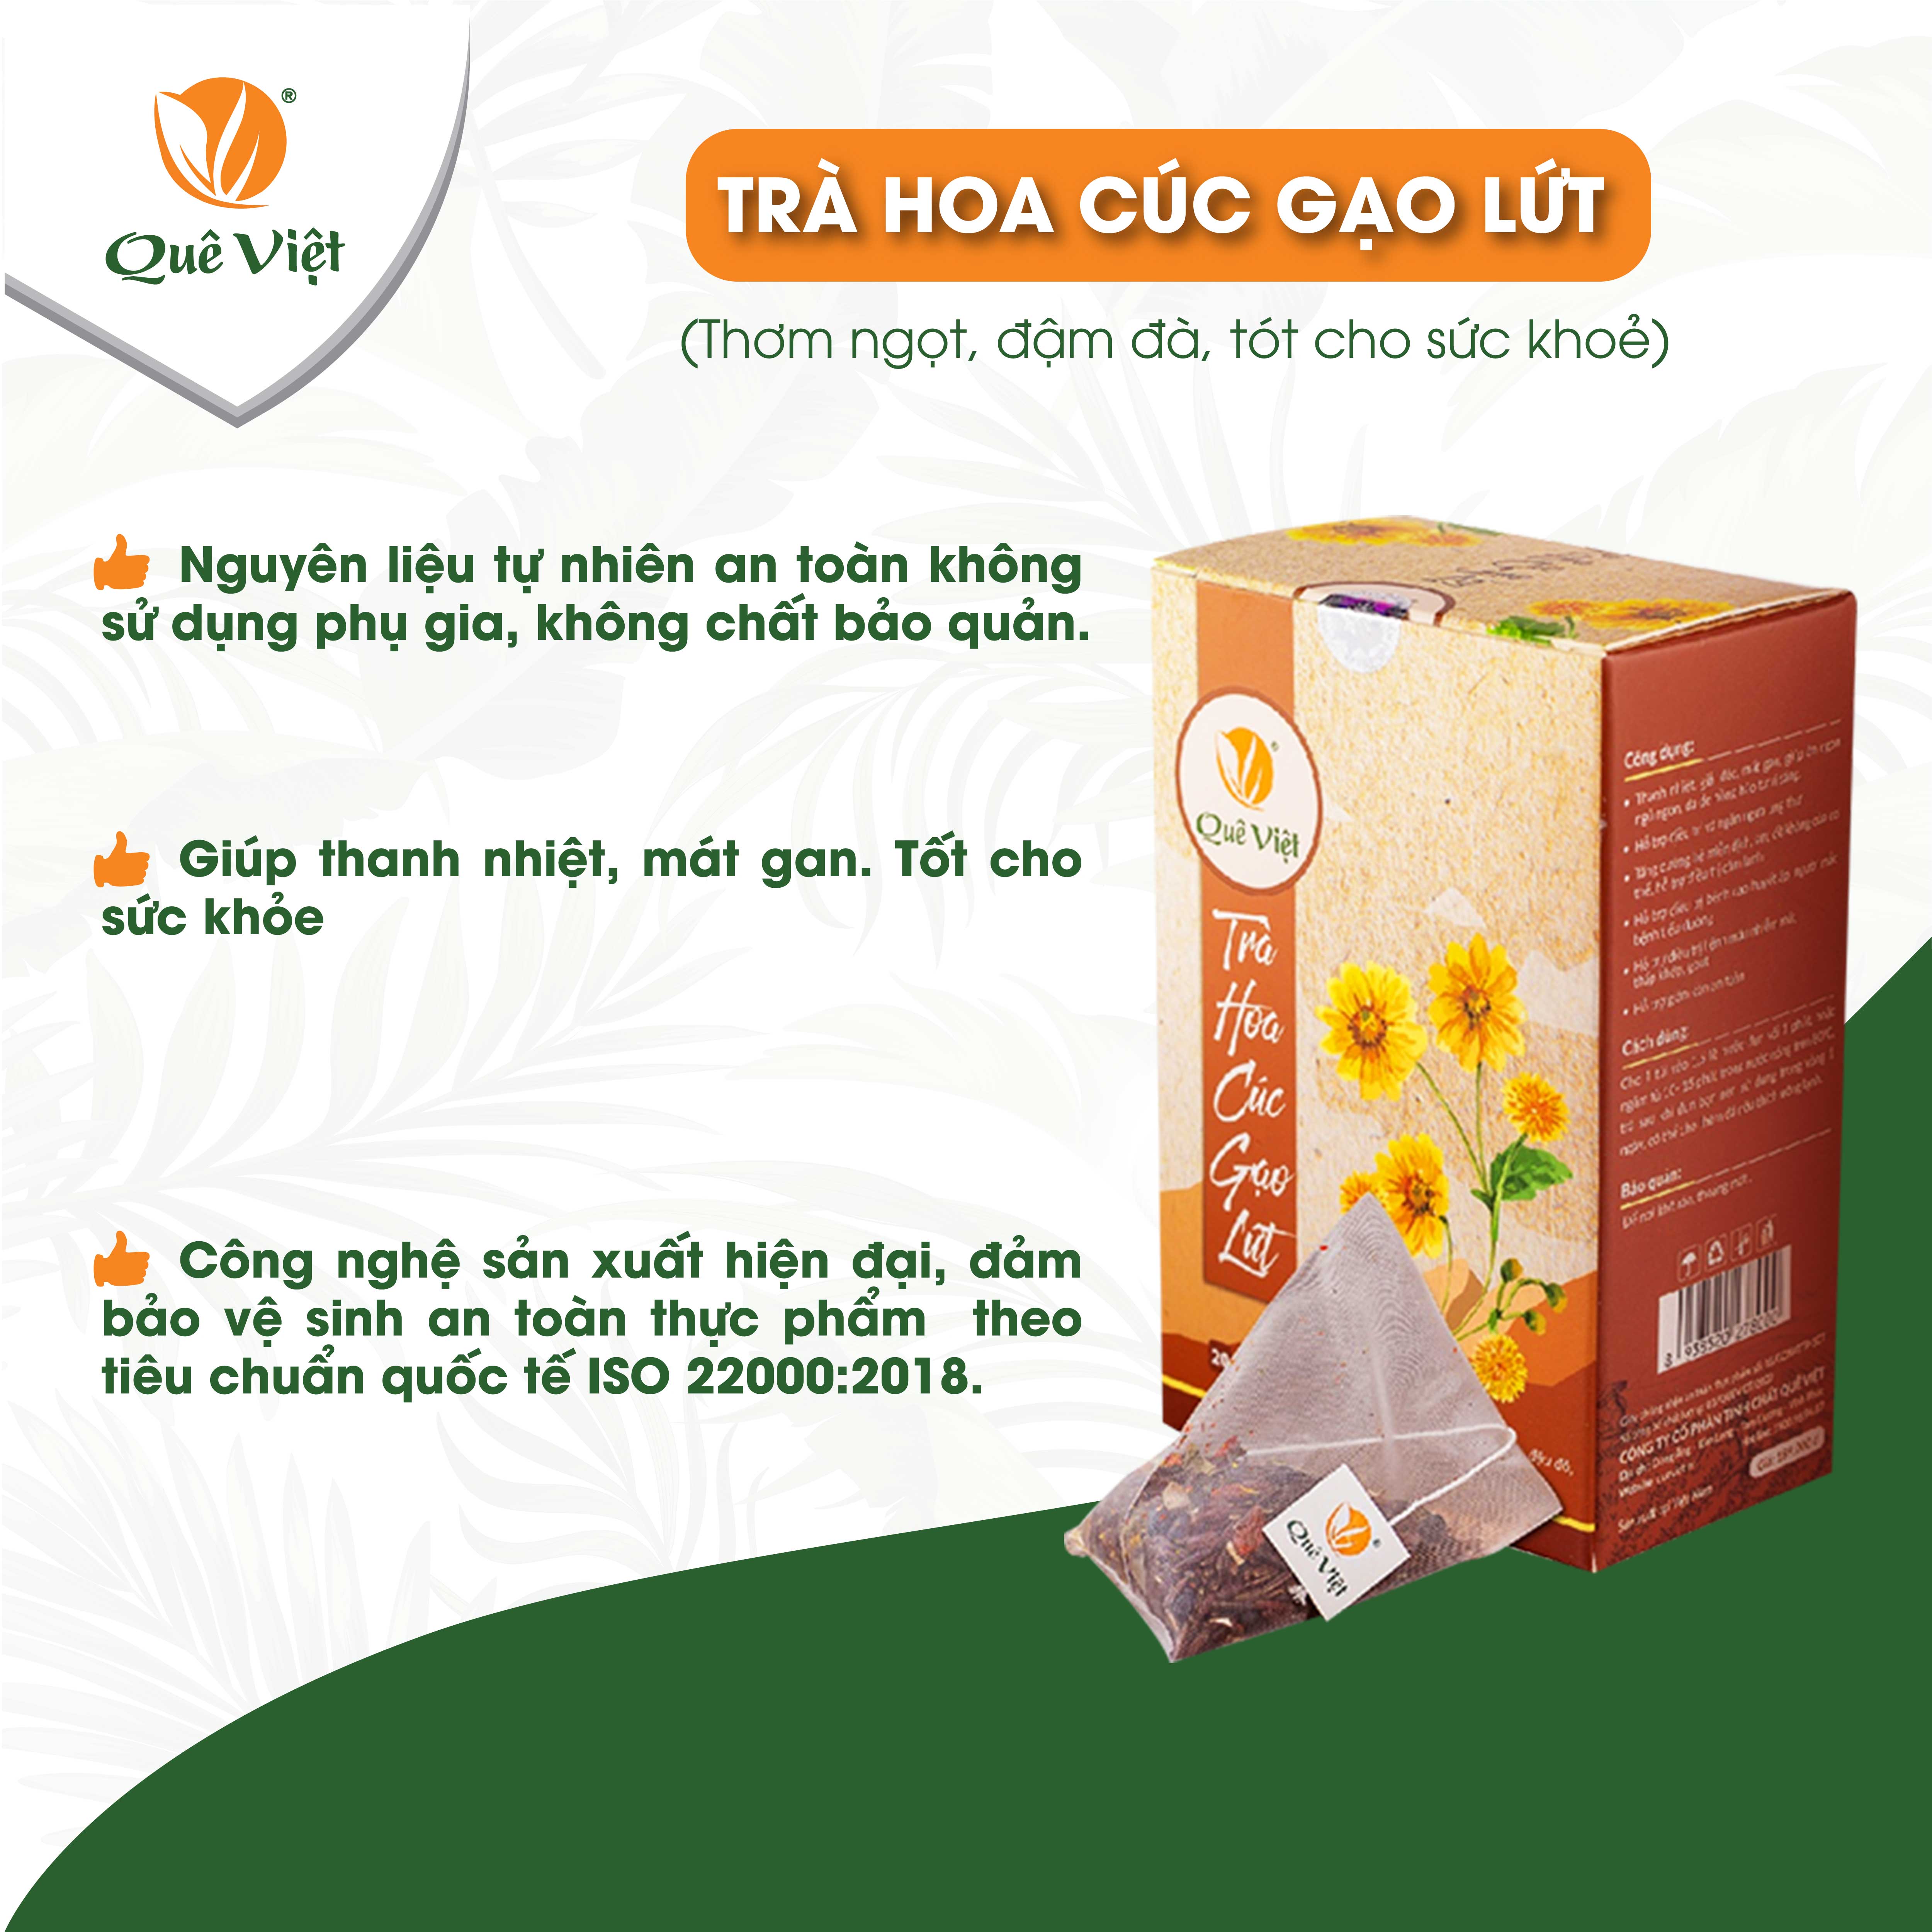 Combo 3 hộp Trà hoa cúc gạo lứt Quê Việt + tặng 1 cốc gốm sứ Bát Tràng - Hộp 600g (20 túi x 30G)